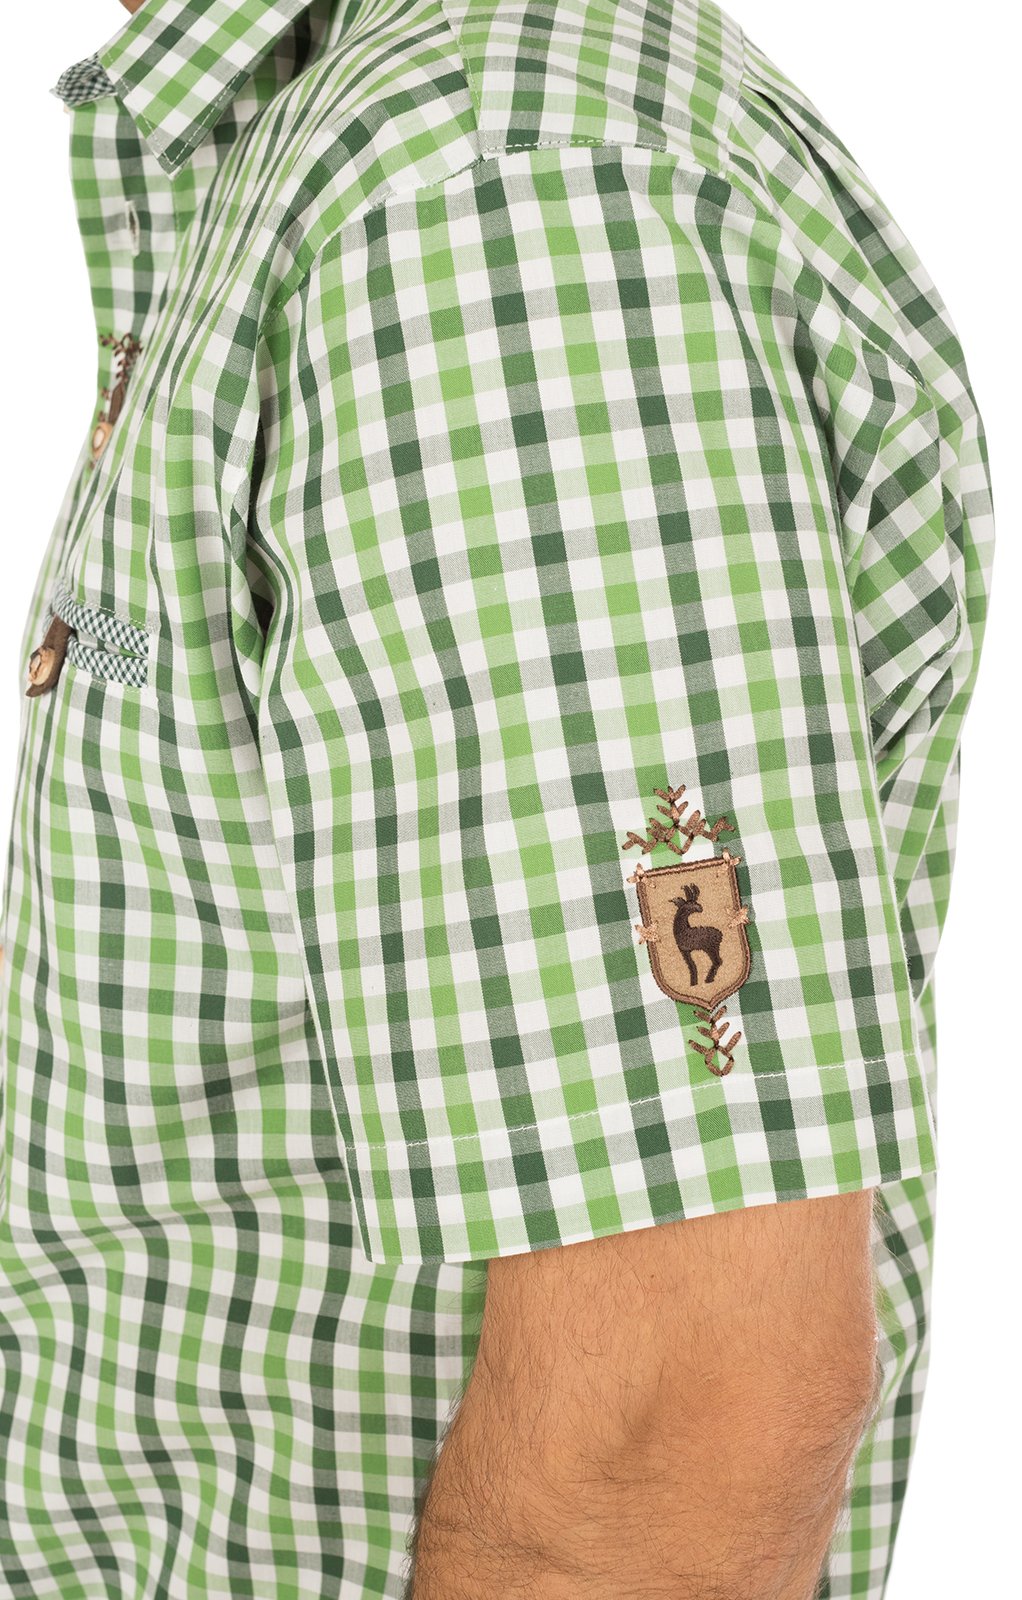 weitere Bilder von Klederdrachthemd korte mouwen groen (Regular Fit)